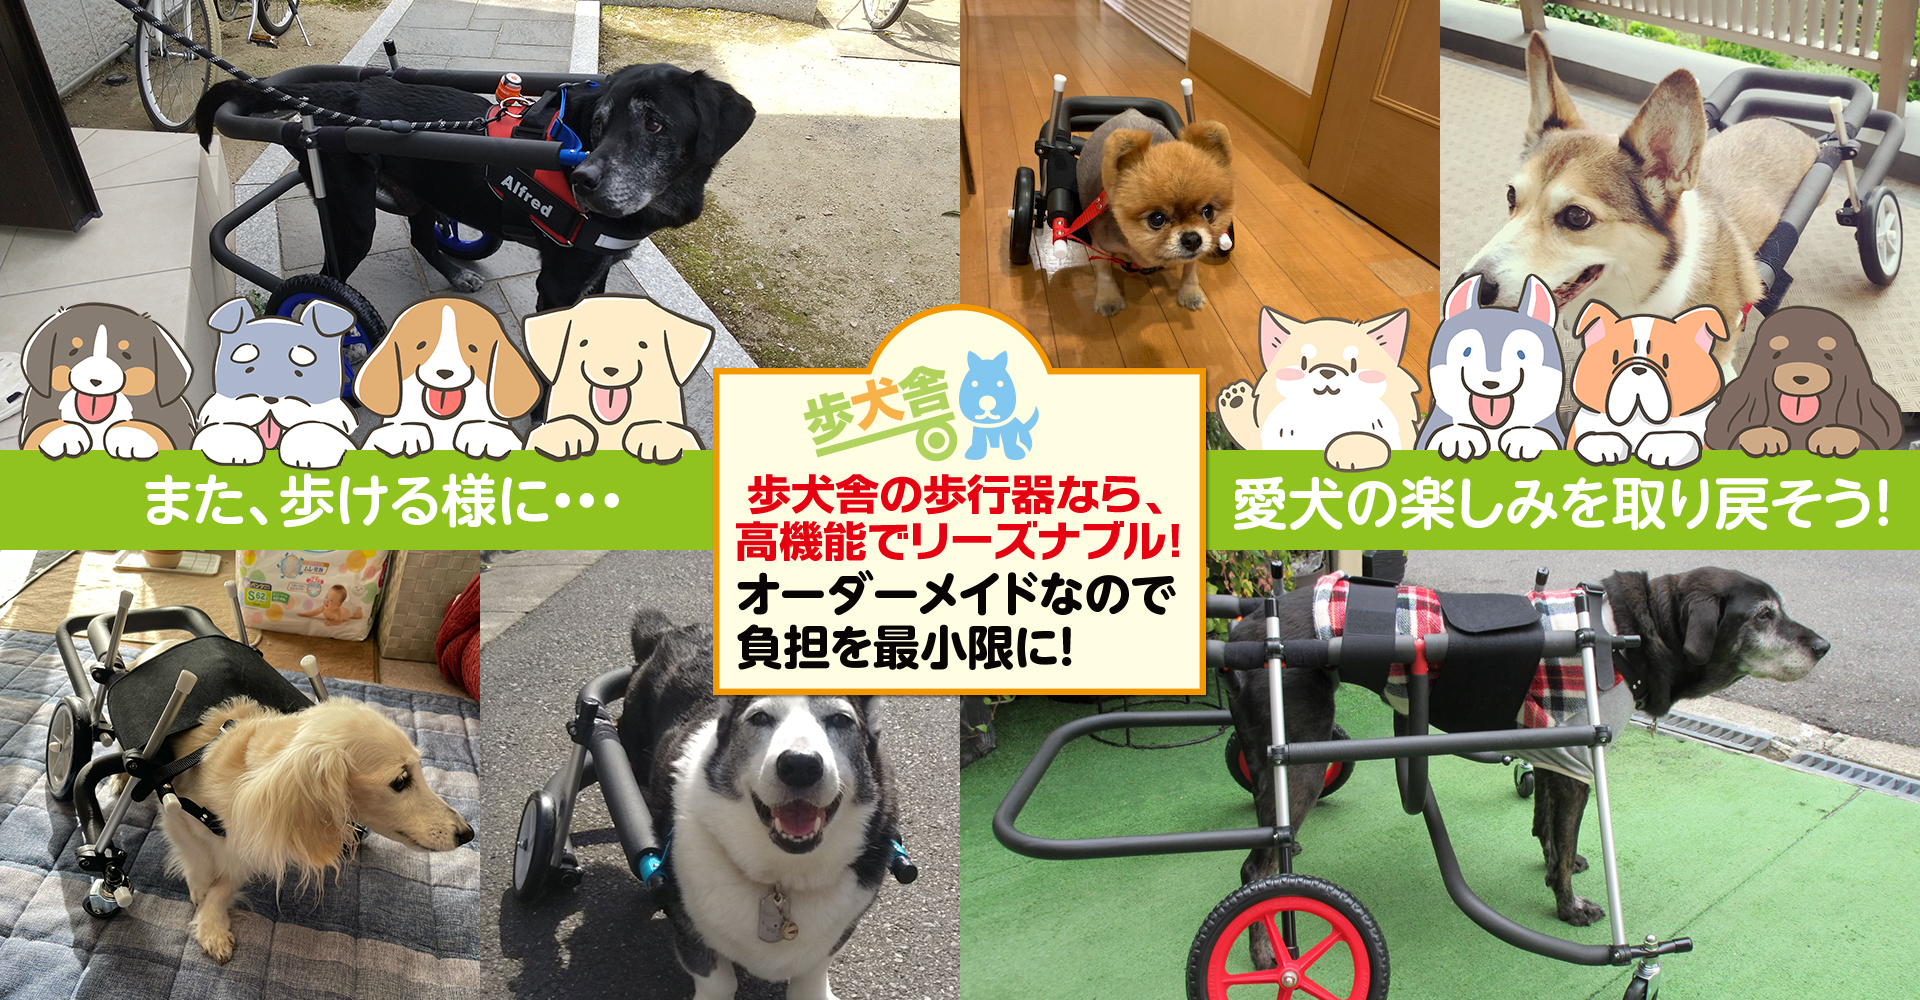 マルチーズ4輪歩行器!リハビリ!食事補助！犬の歩行器!介護用!犬用車椅子!